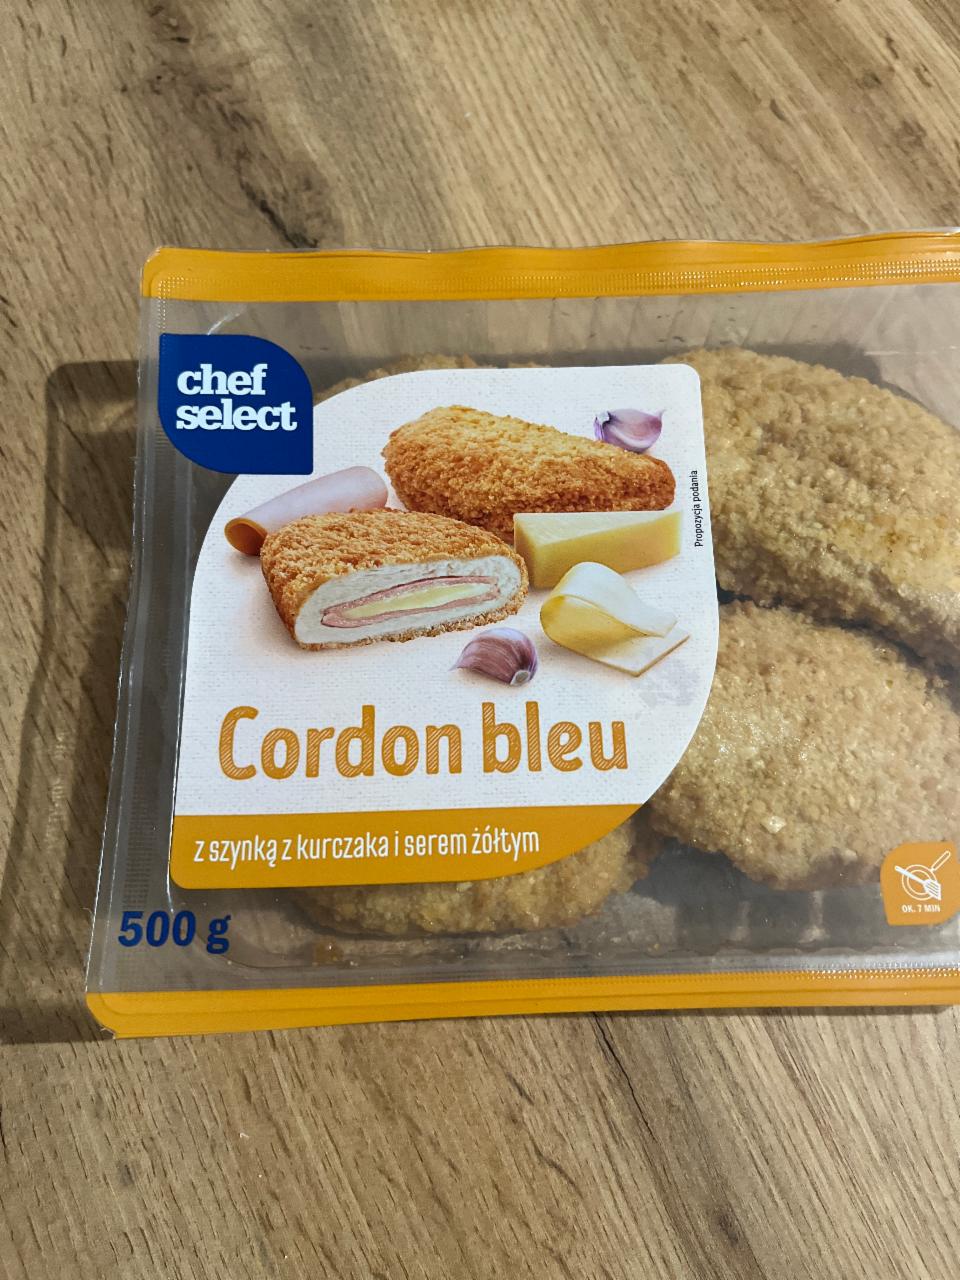 Фото - котлета из курицы с сыром и ветчиной Cordon bleu Chef select